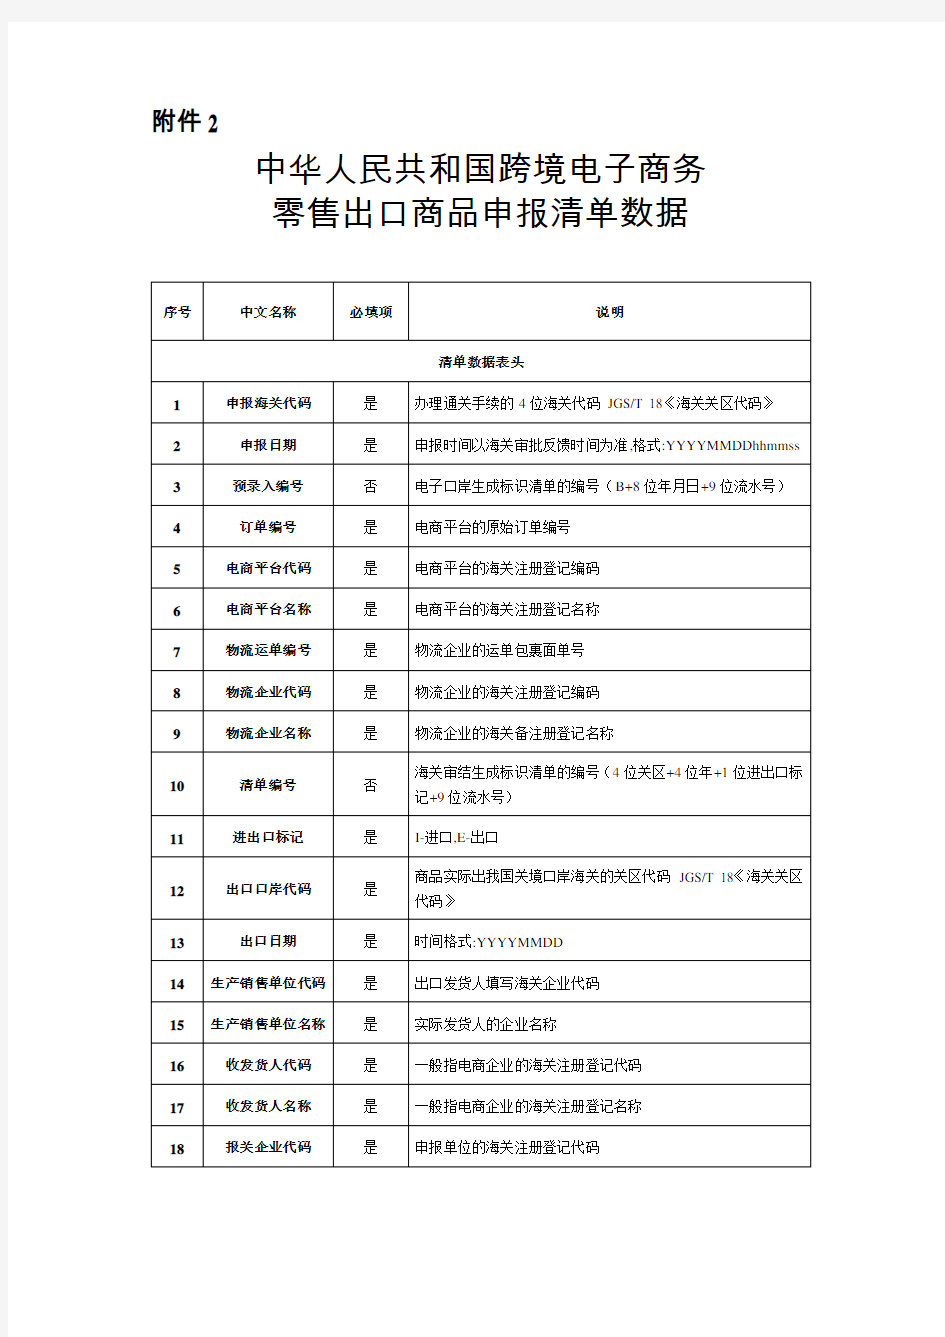 中华人民共和国跨境电子商务零售出口商品申报清单数据